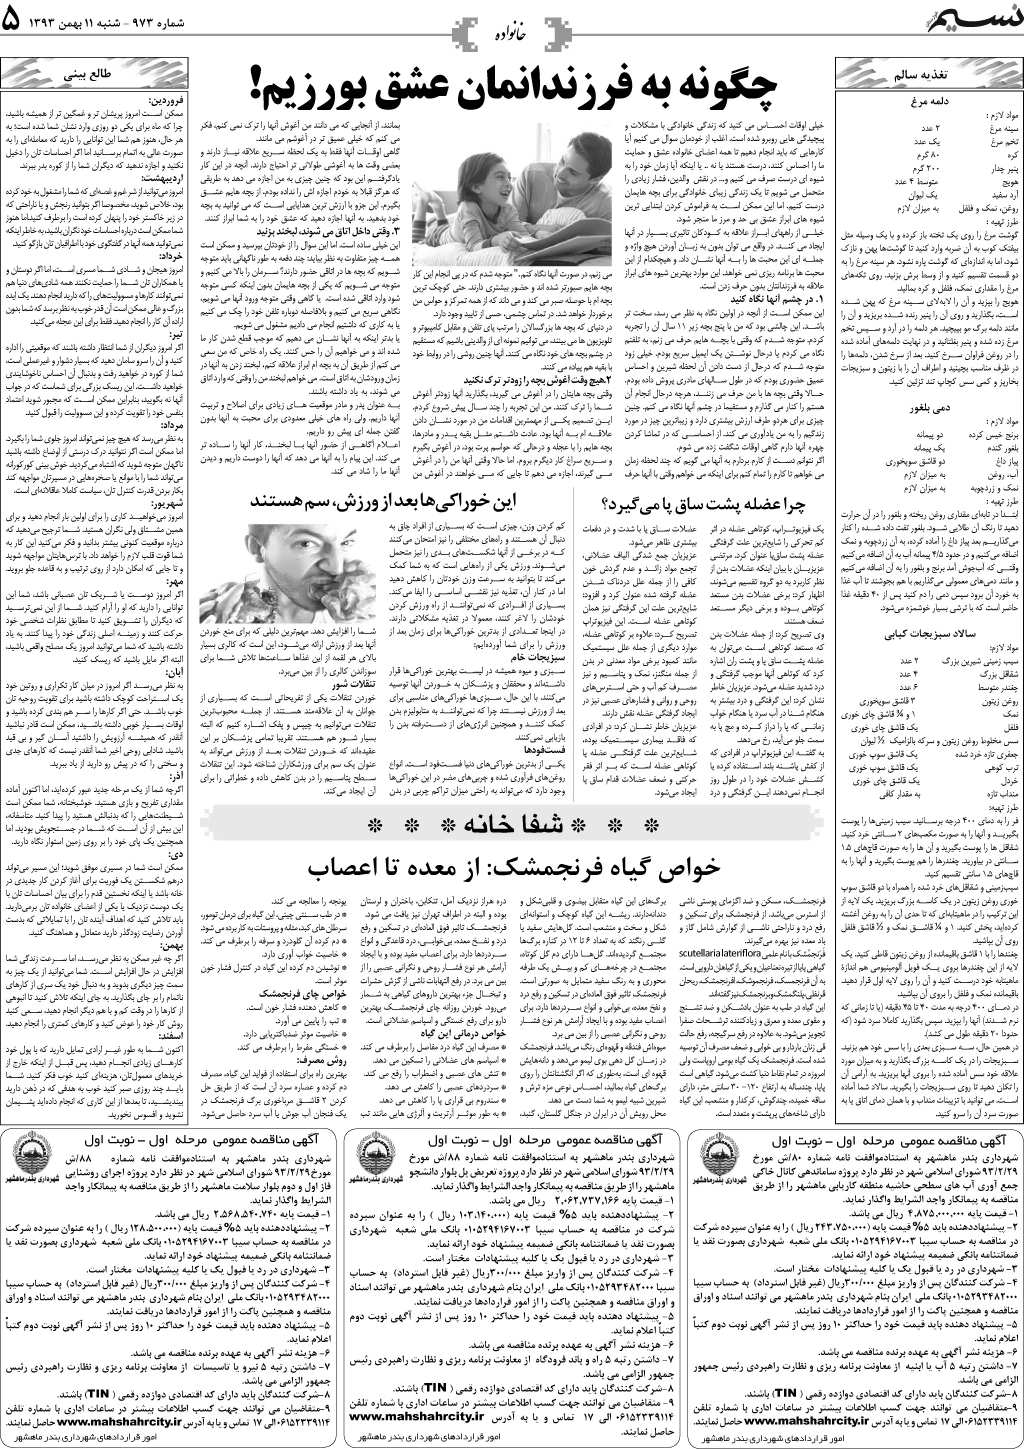 صفحه خانواده روزنامه نسیم شماره 973